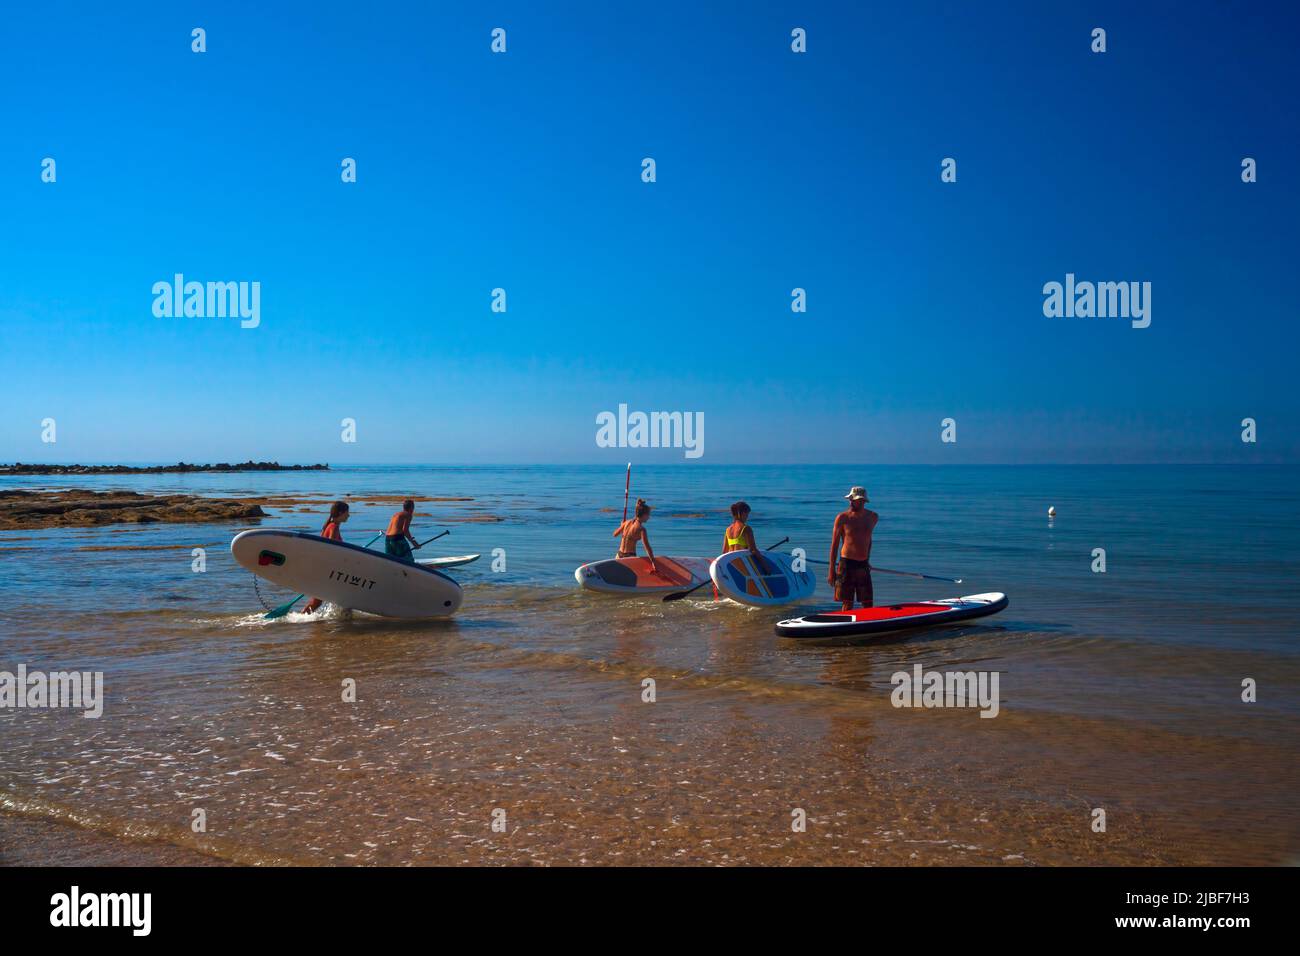 Realmonte, Italia - 23 de julio,: Stand up paddle boarding. Alegre grupo de amigos entrenando SUP board en el mar mediterráneo en una mañana soleada en Re Foto de stock